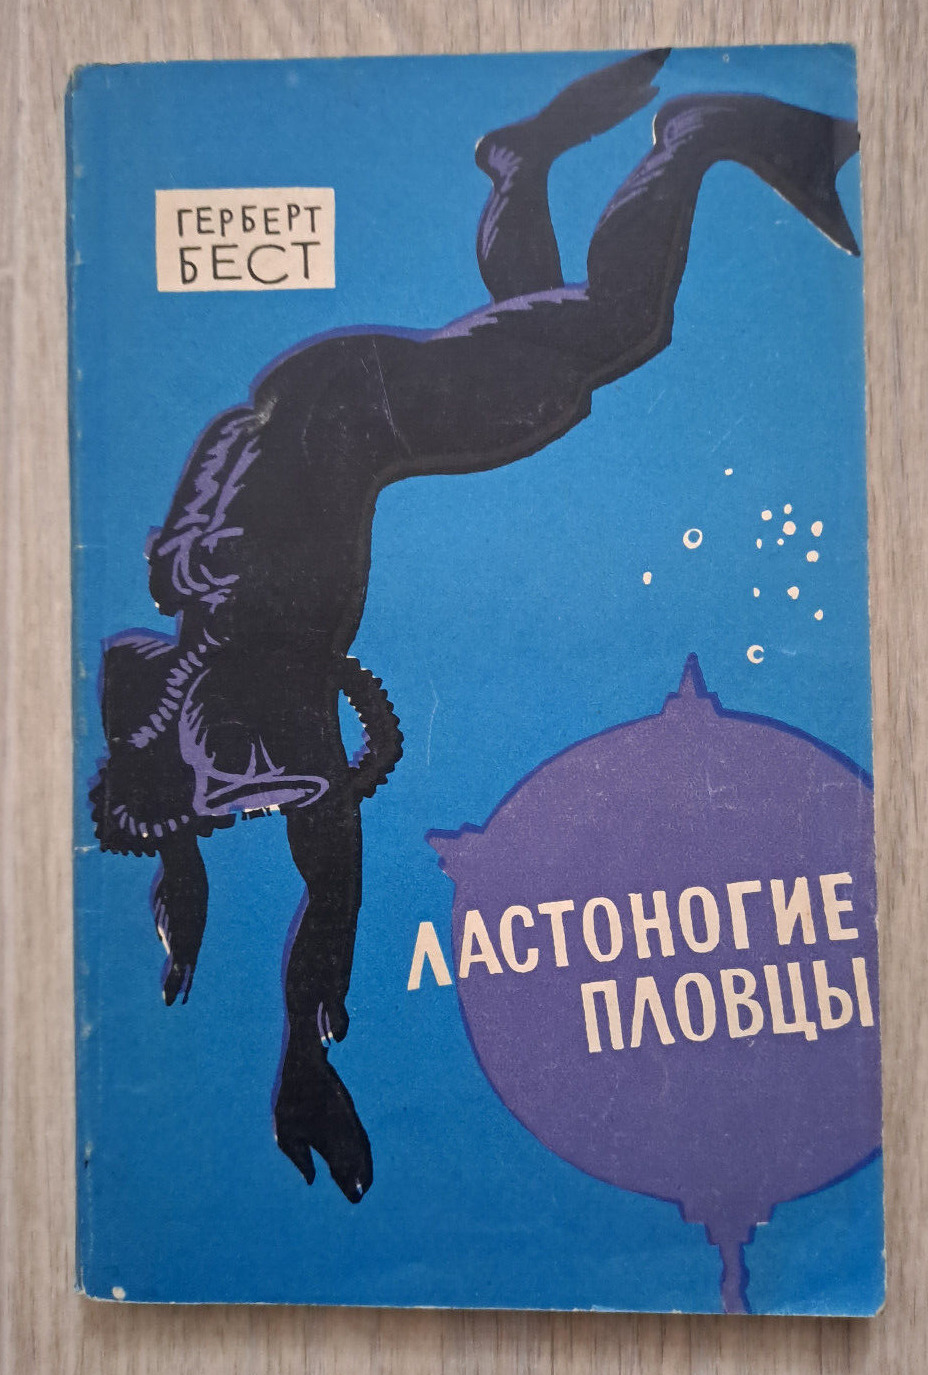 1966 Webfoot Warriors Herbert Best divers diving US Navy soldiers Russian book